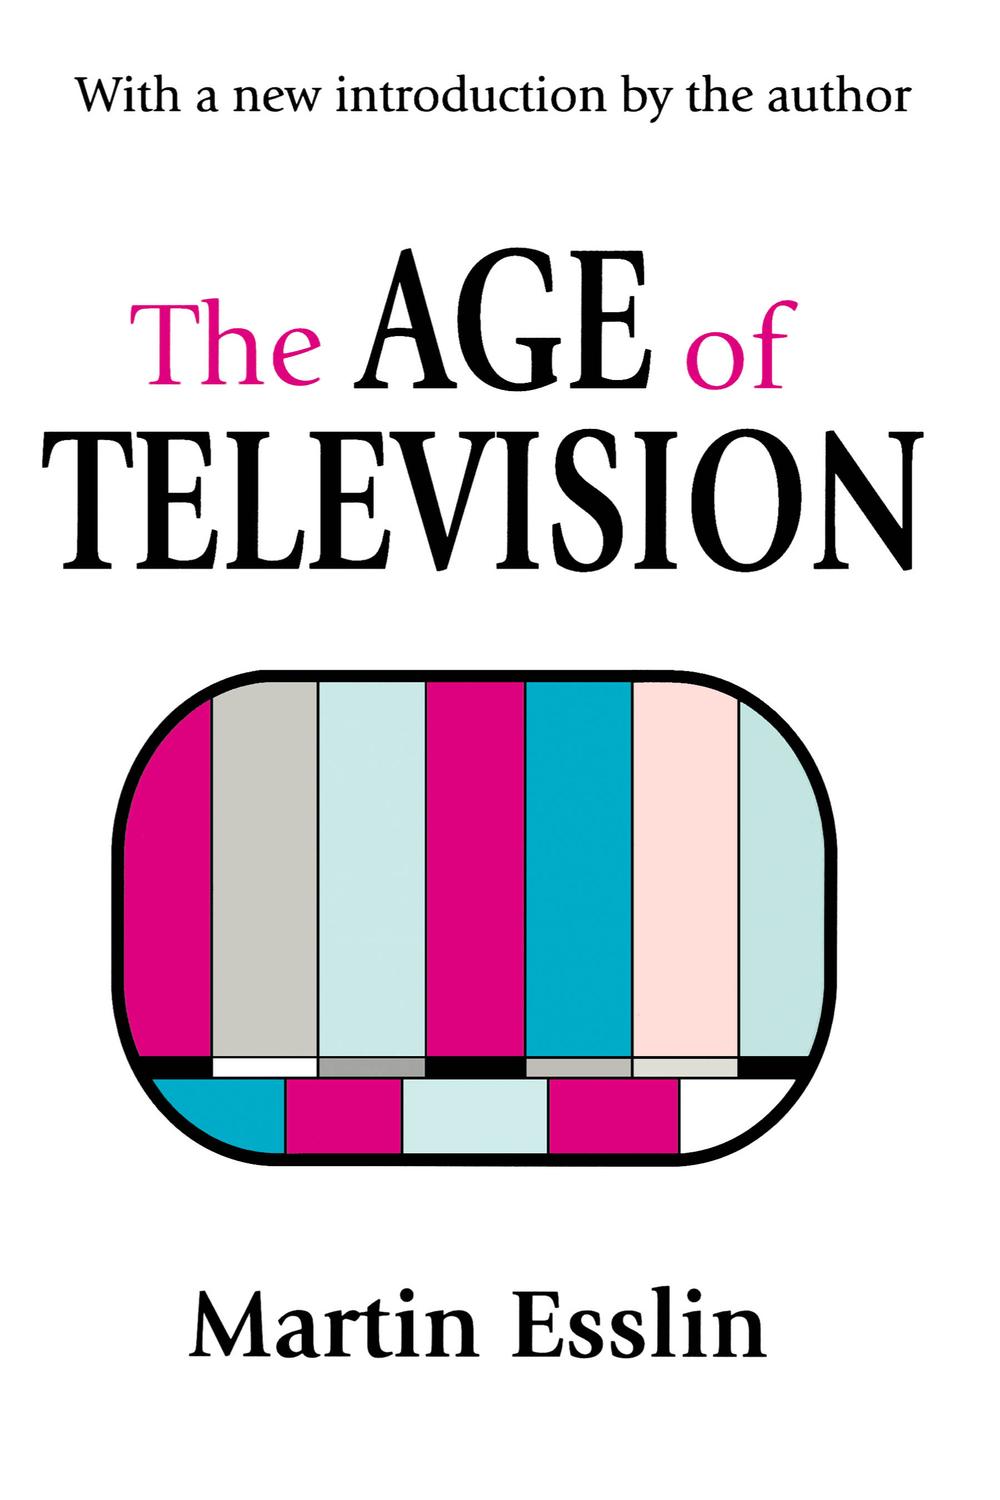 The Age of Television - Martin Esslin